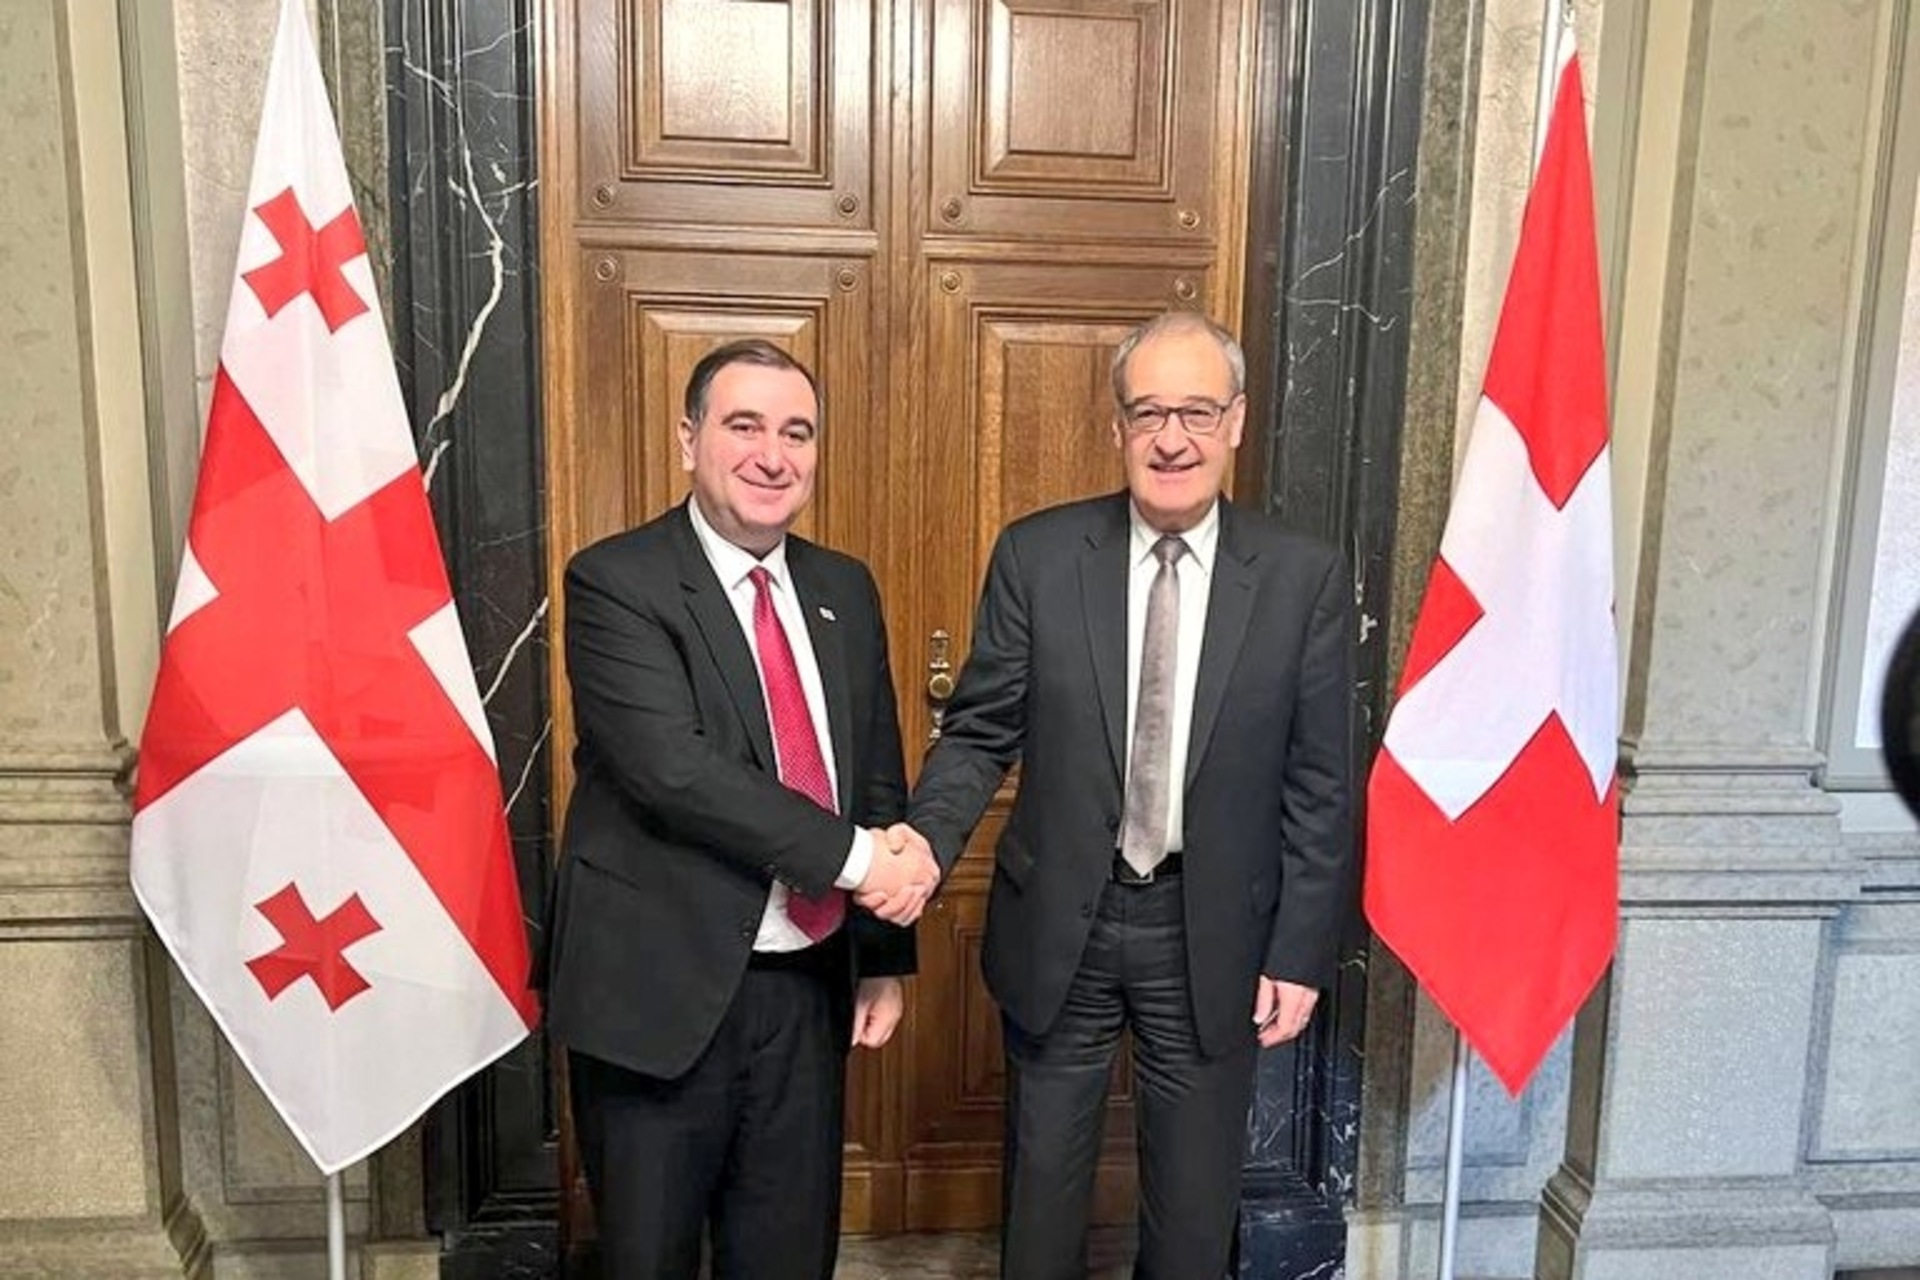 Utdanningsforskningsinnovasjon: Den sveitsiske forbundsrådmannen Guy Parmelin og den georgiske ministeren Mikheil Chkhenkeli